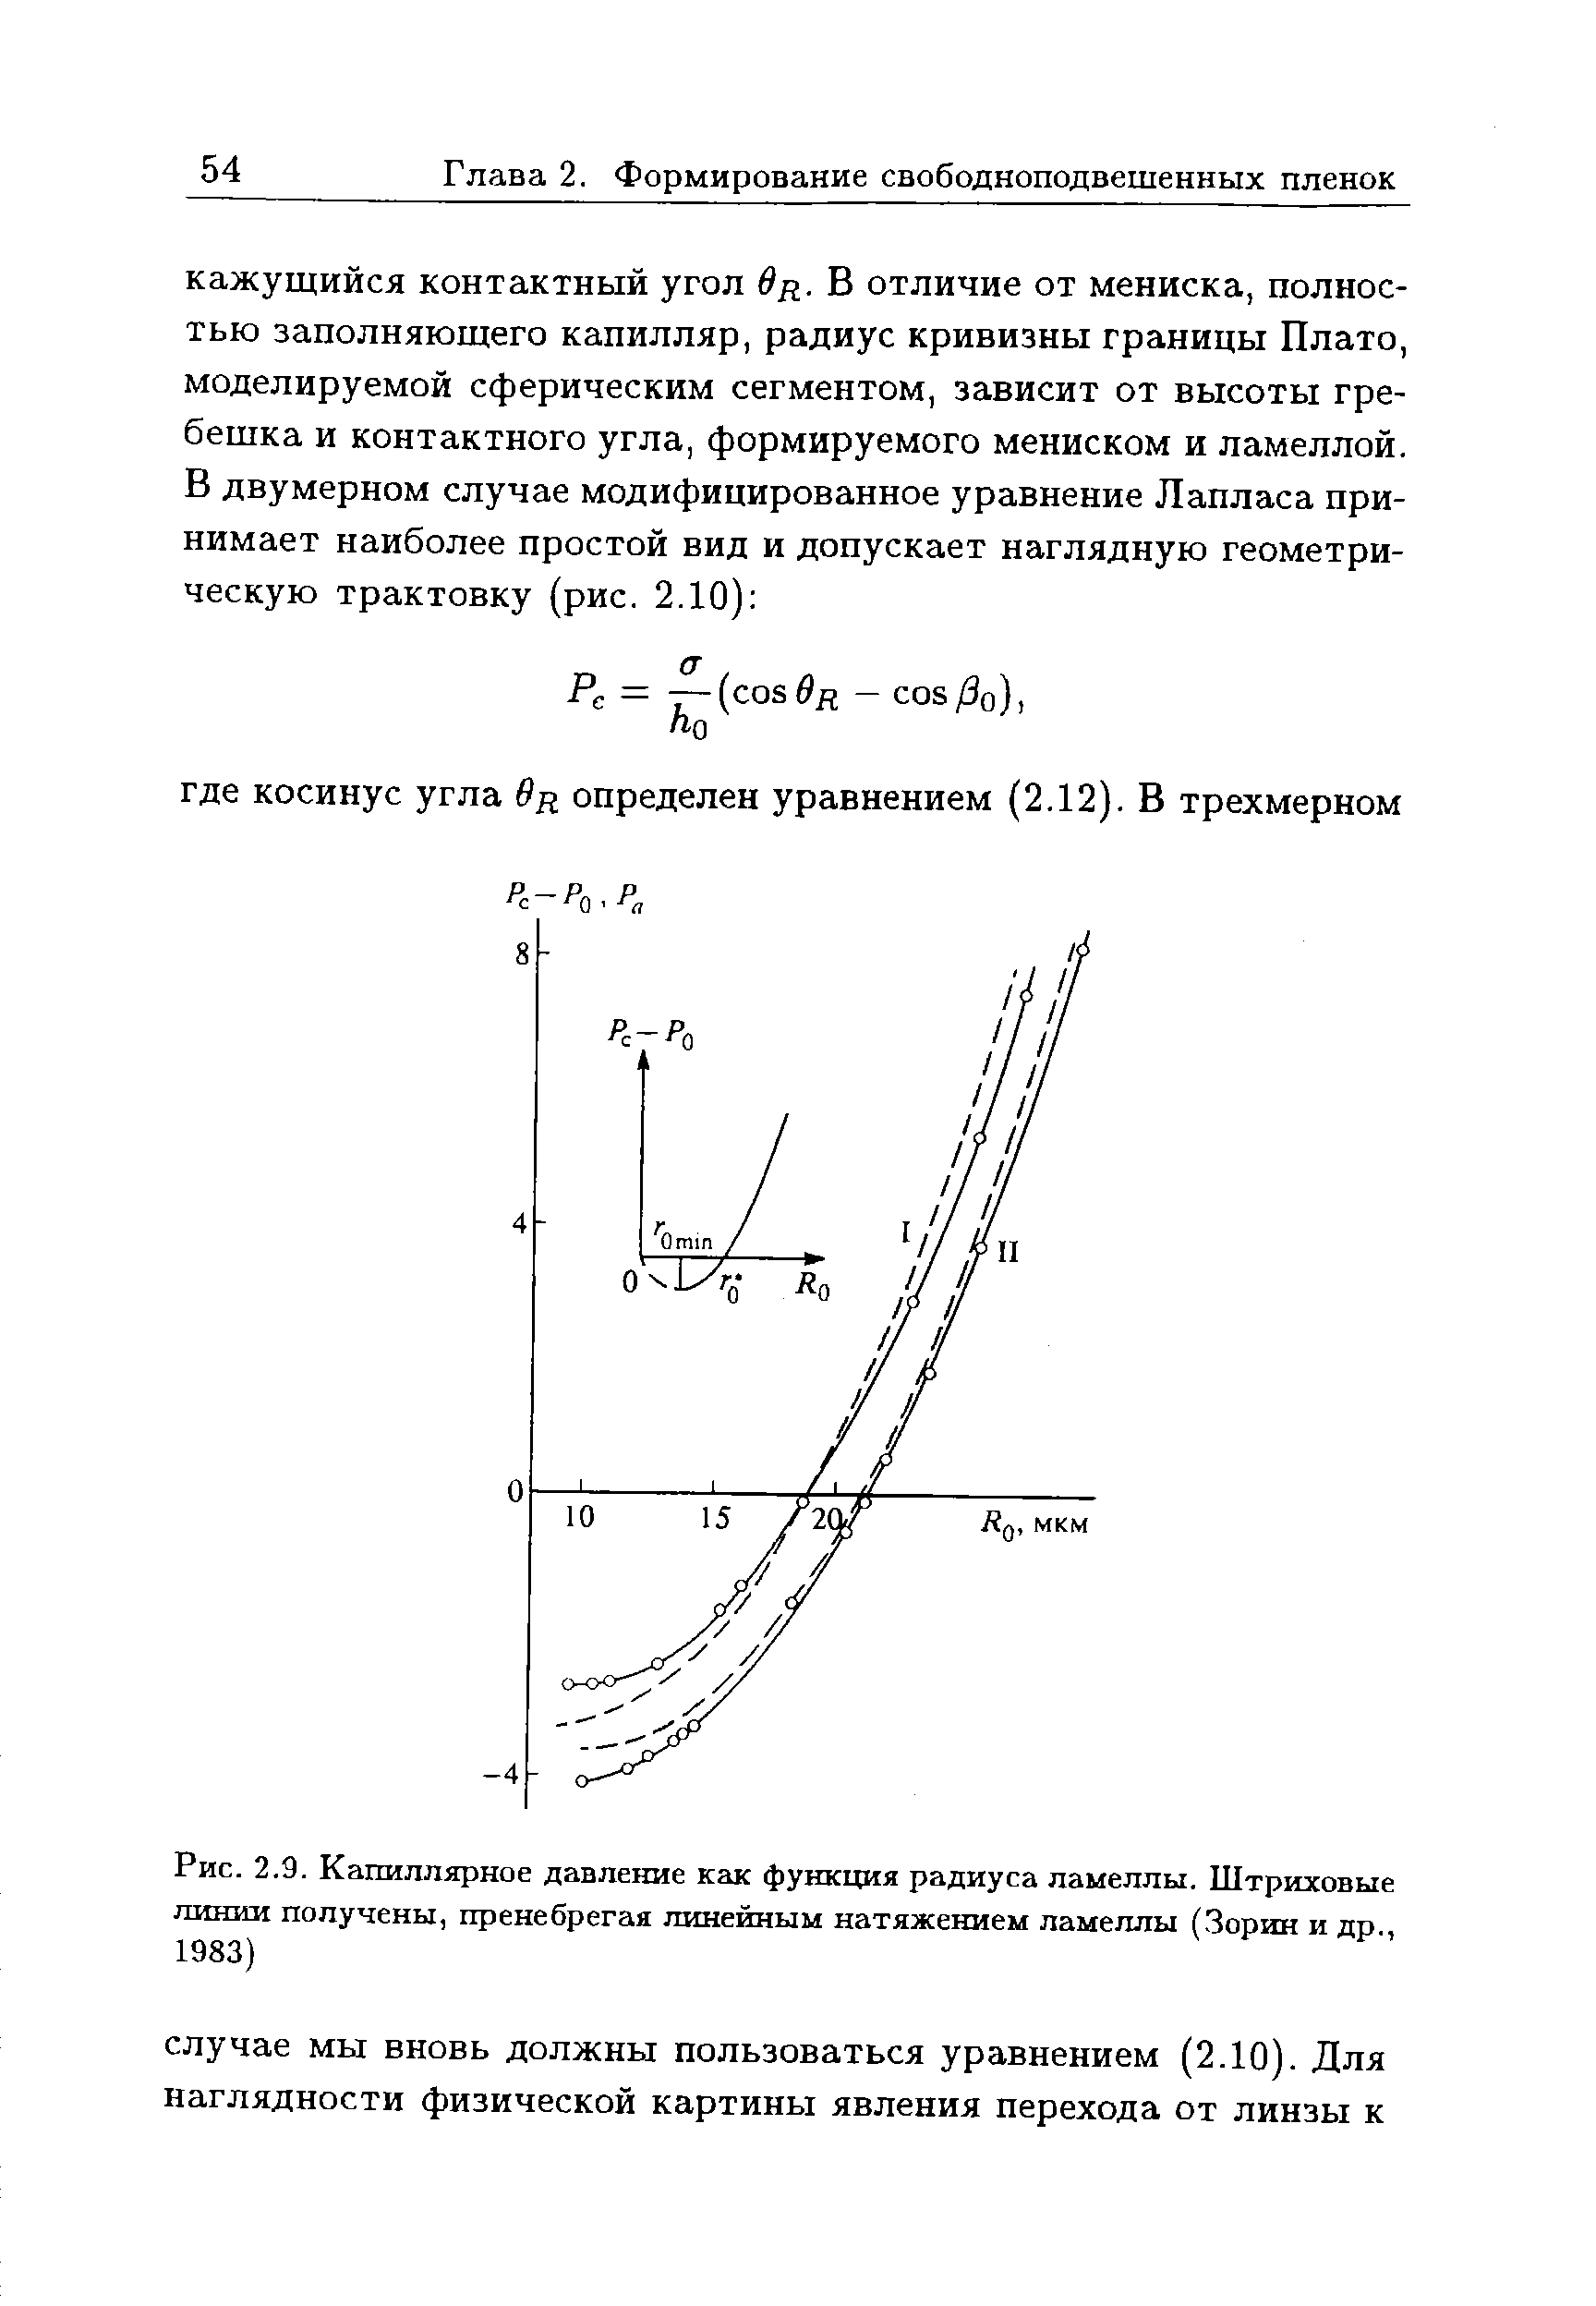 Рис. 2.9. <a href="/info/198368">Капиллярное давление</a> как функция радиуса ламеллы. <a href="/info/1024">Штриховые линии</a> получены, пренебрегая линейным натяжением ламеллы (Зорин и др., 1983)
